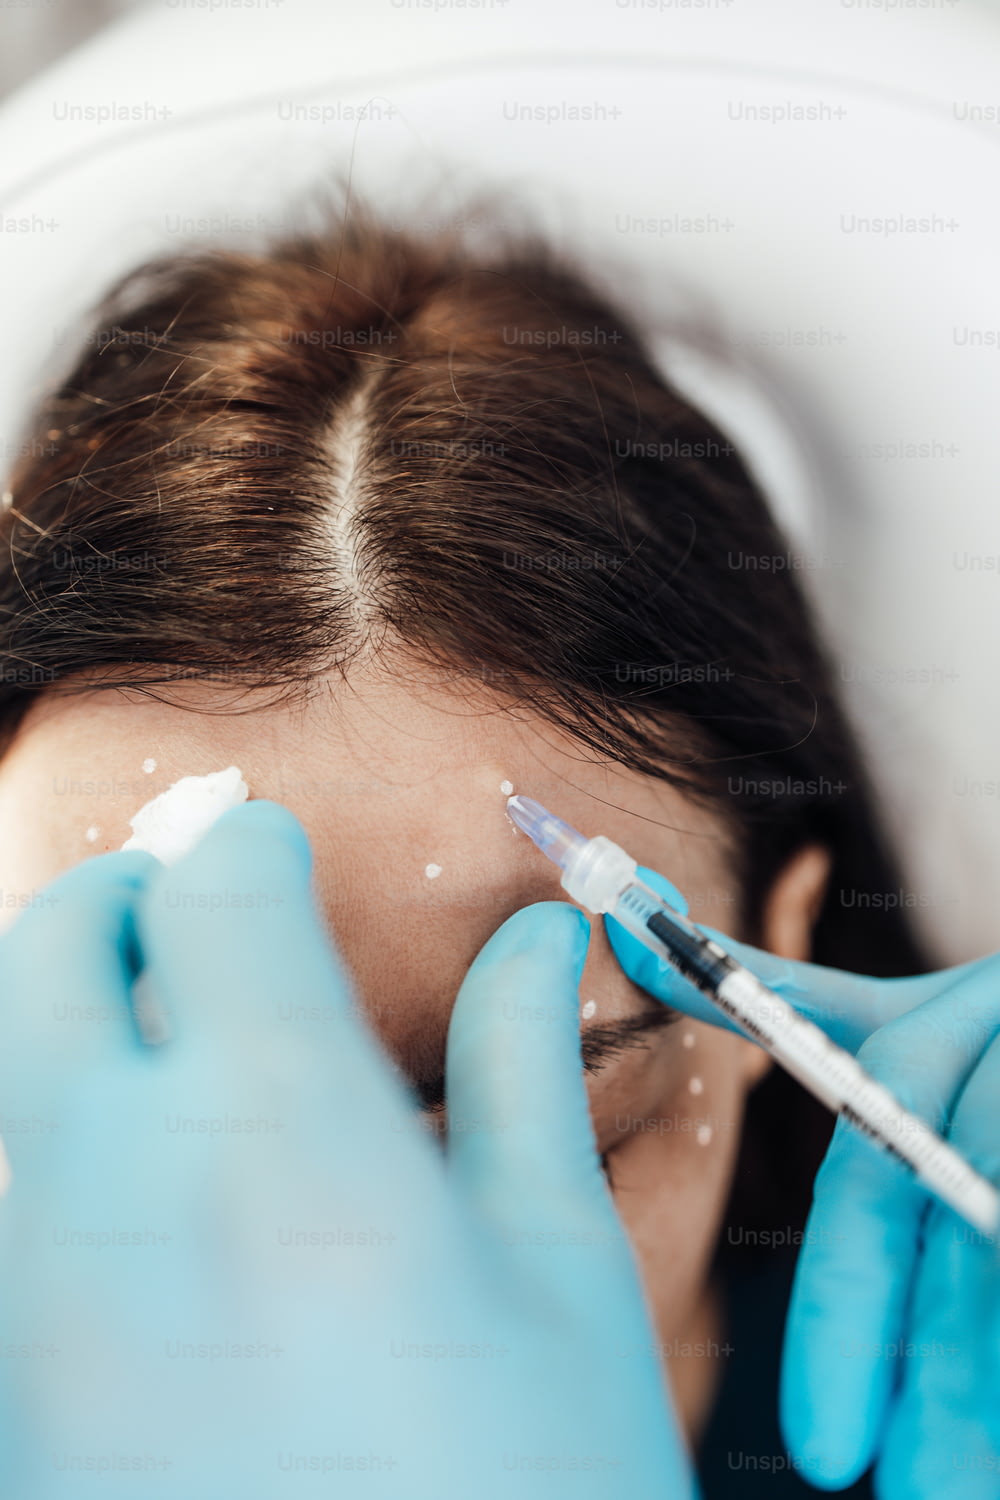 Una atractiva mujer rubia está recibiendo inyecciones faciales rejuvenecedoras en una clínica de belleza. La experta esteticista está rellenando las arrugas femeninas con botulinum.